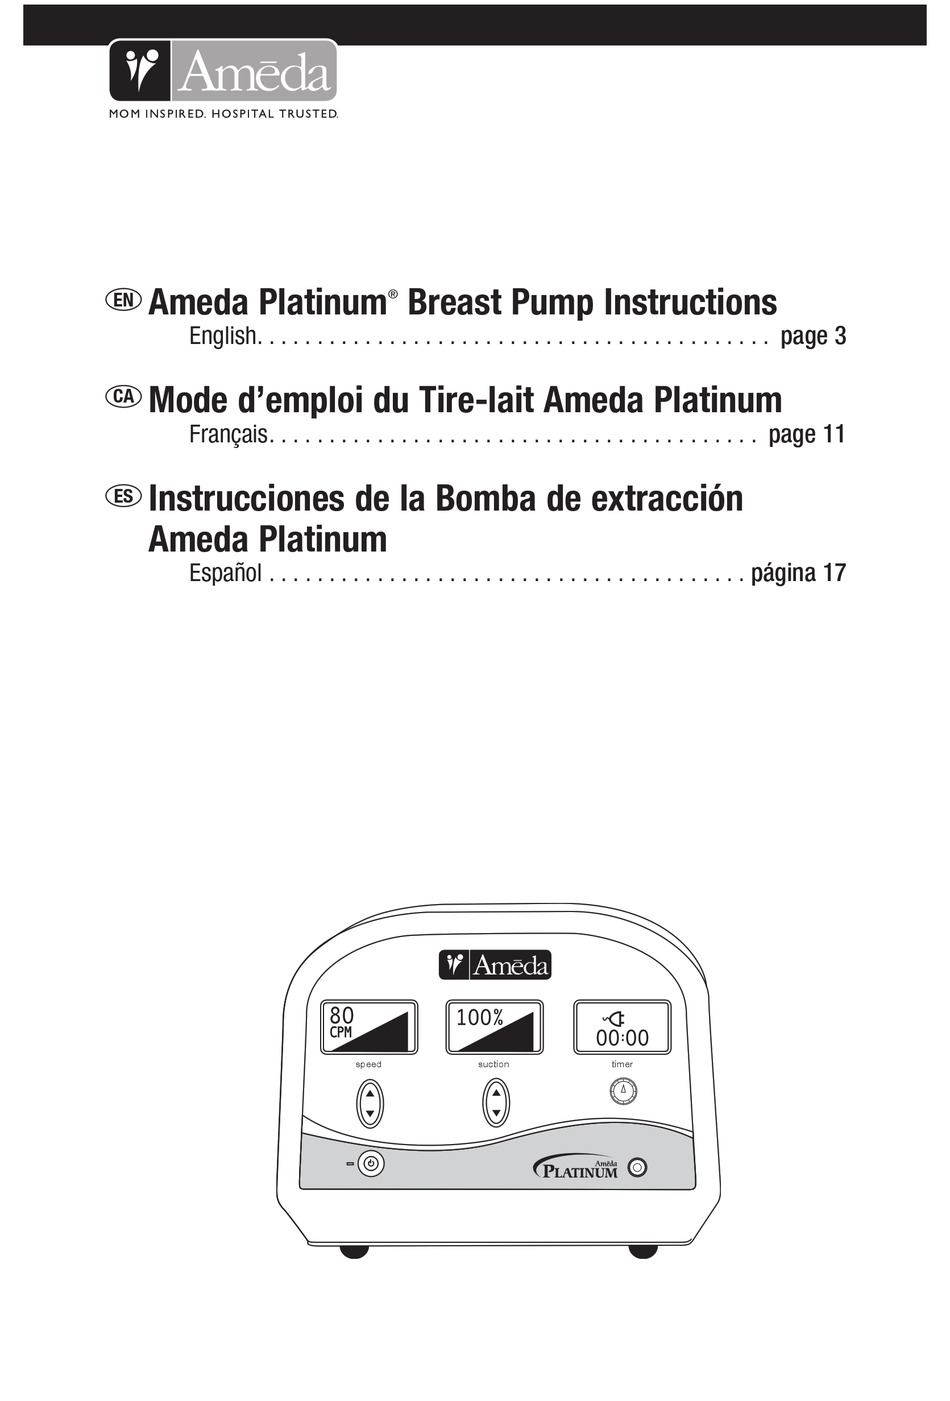 nero 12 platinum manual pdf